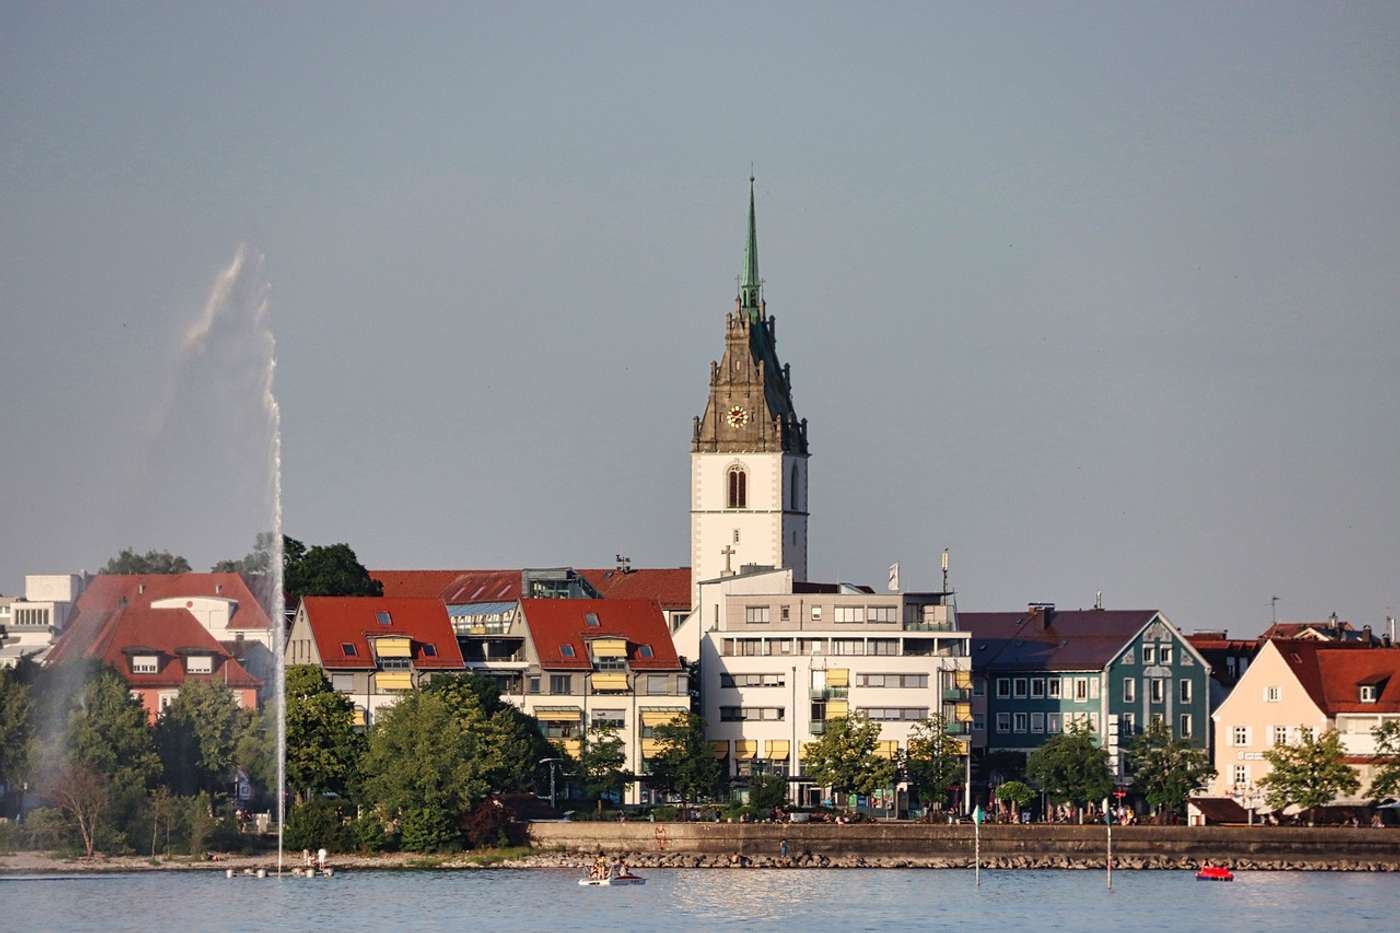 Discover your piece of Friedrichshafen.